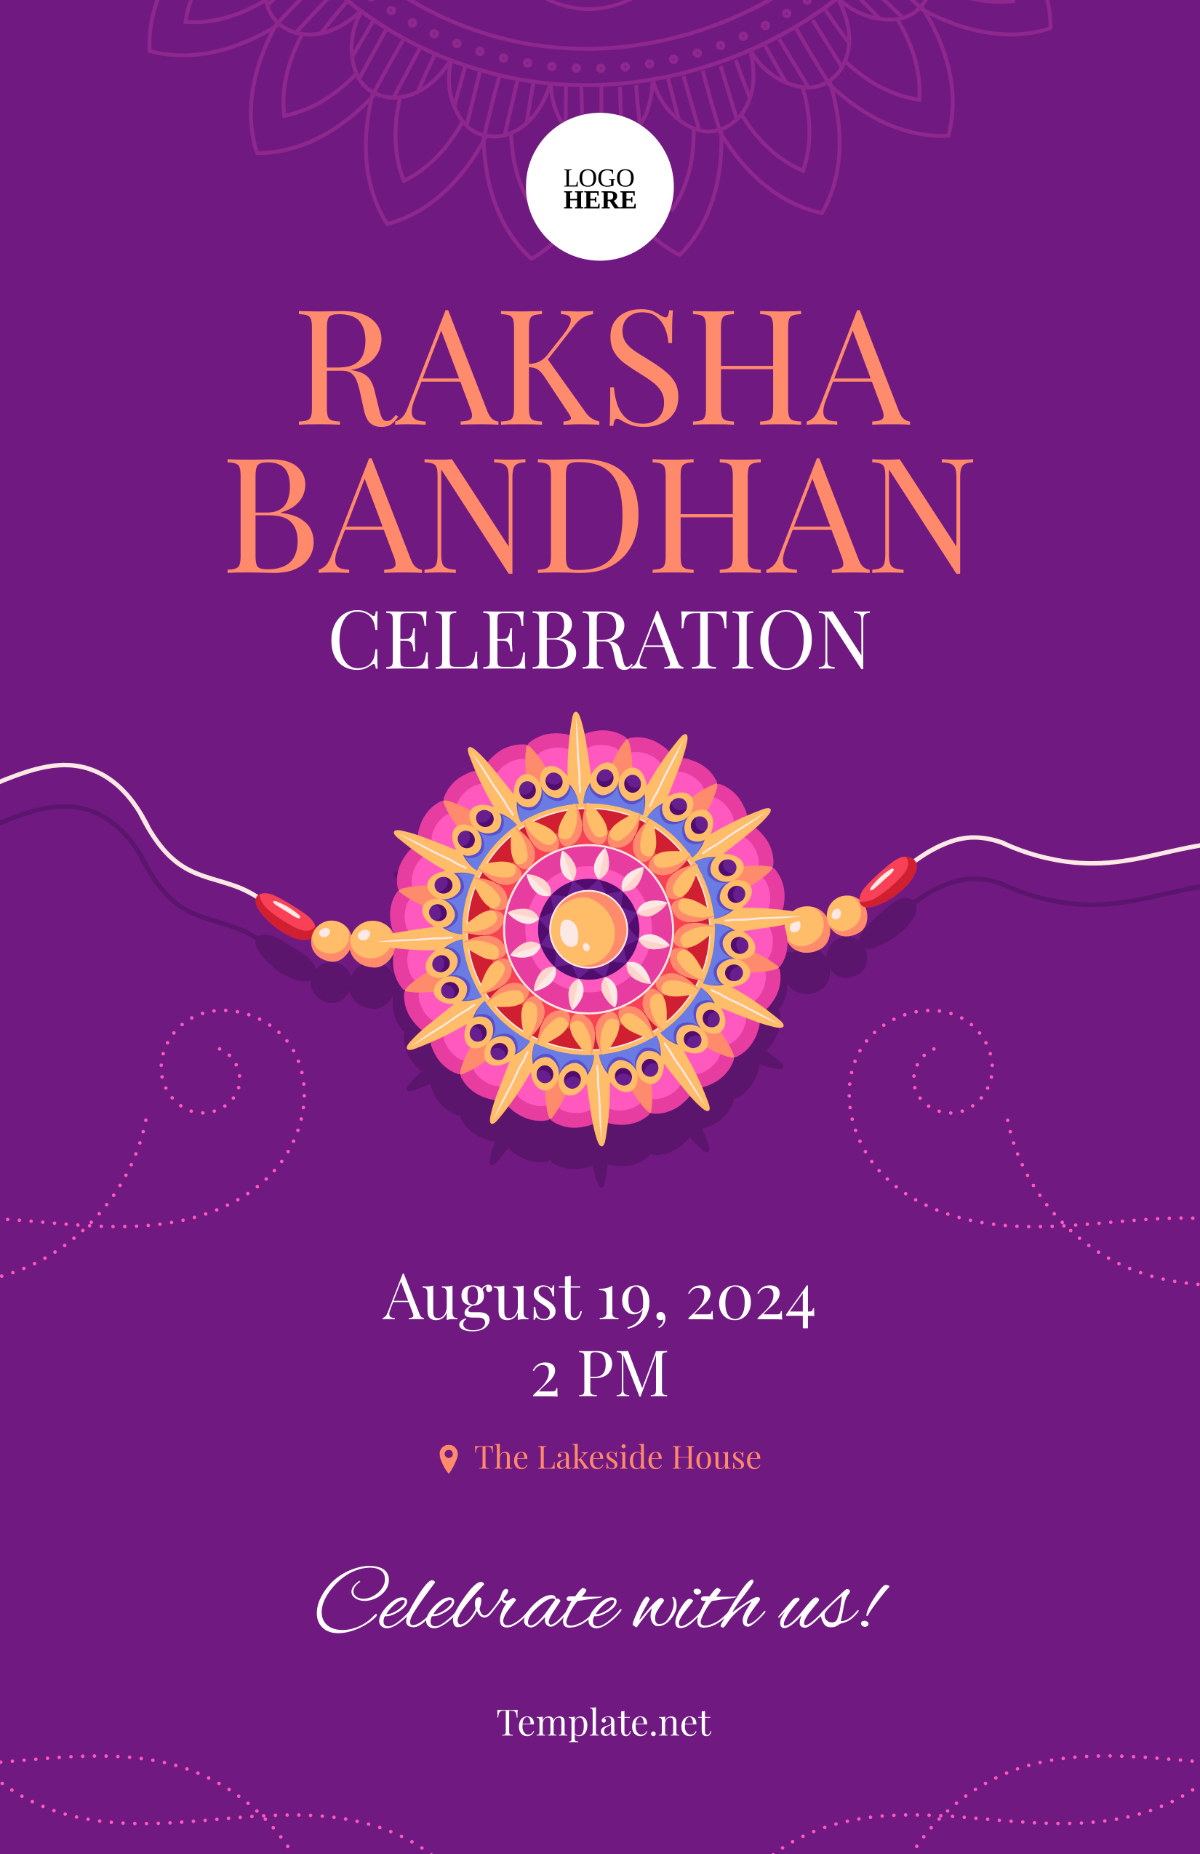 Raksha Bandhan Background Poster